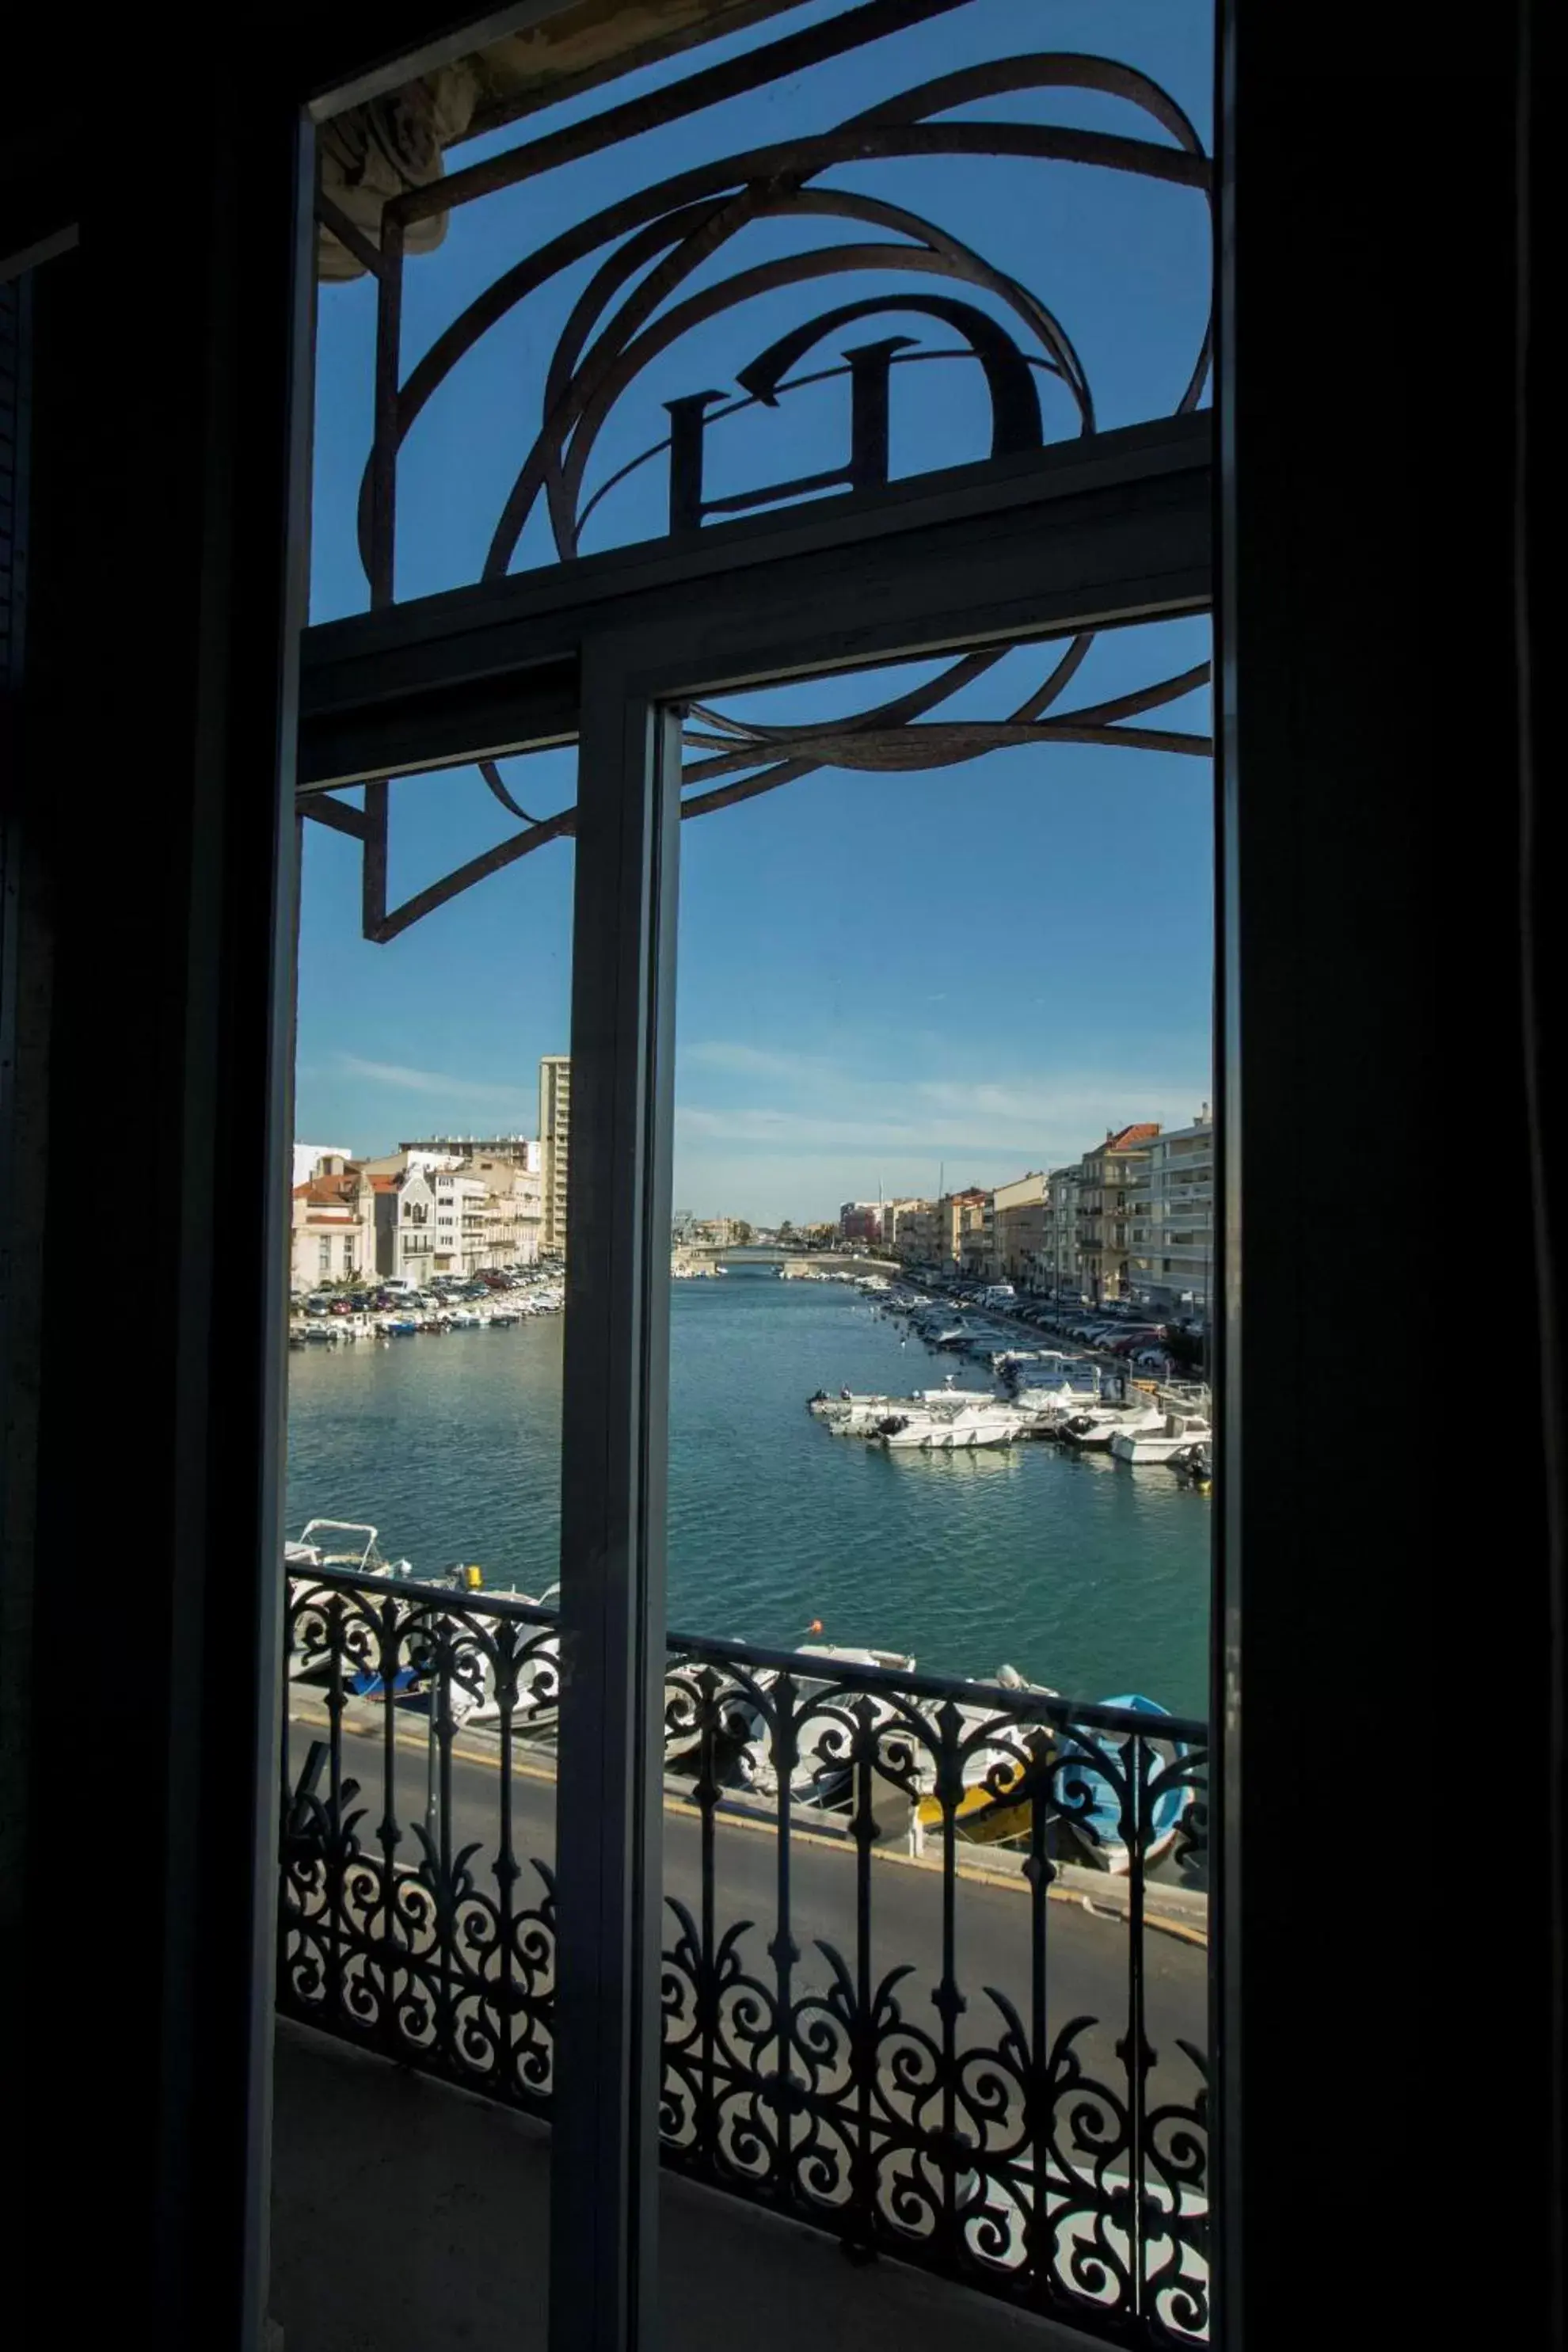 Sea view in Le Grand Hotel